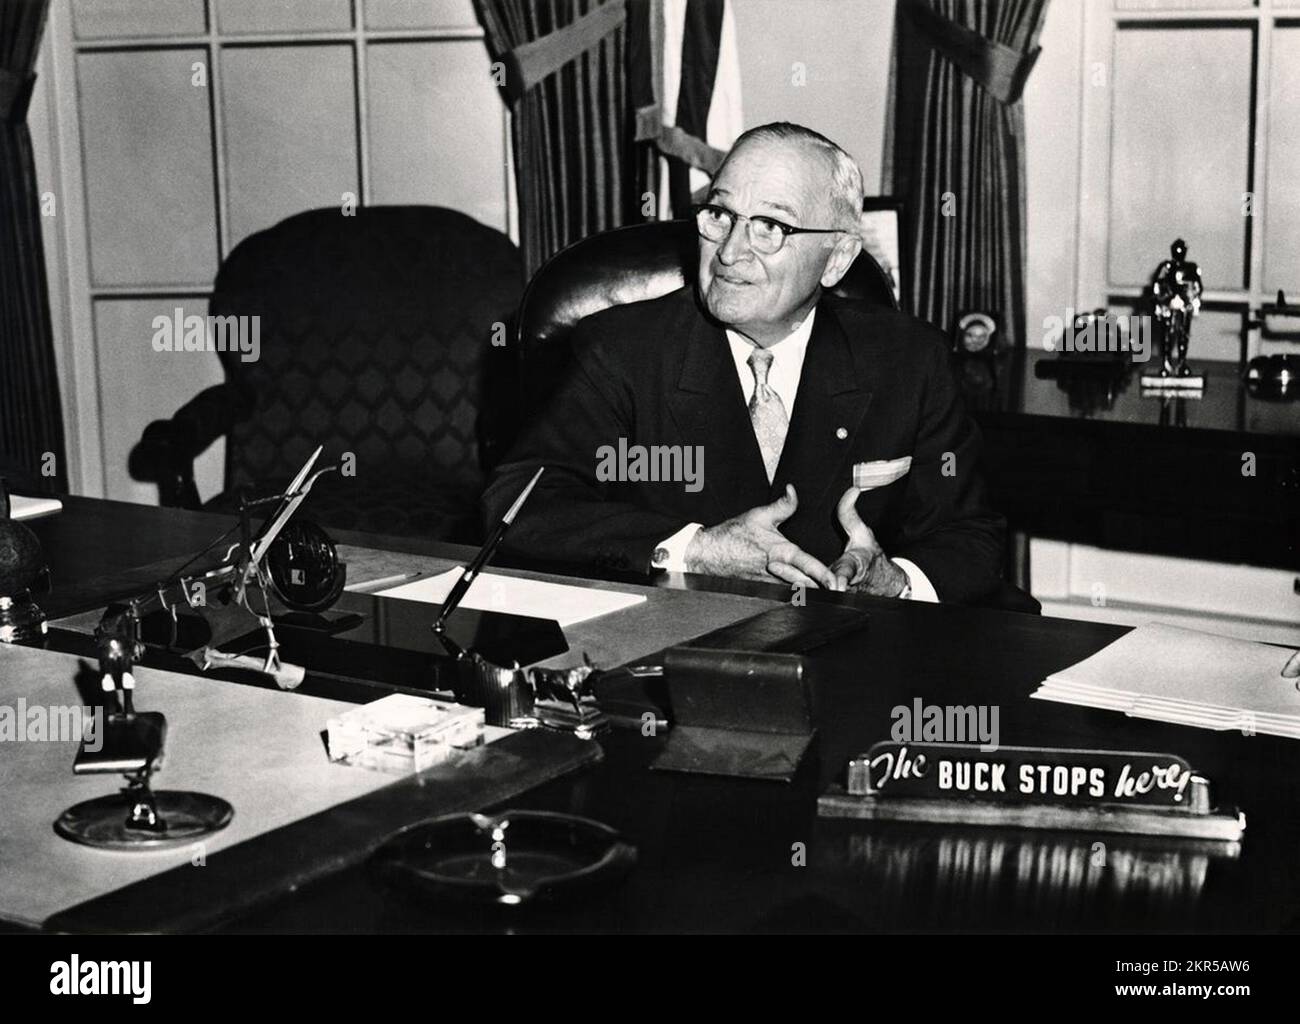 L'ancien président Harry Truman avec le panneau « le Buck s'arrête ici » sur une récréation de son bureau ovale Banque D'Images